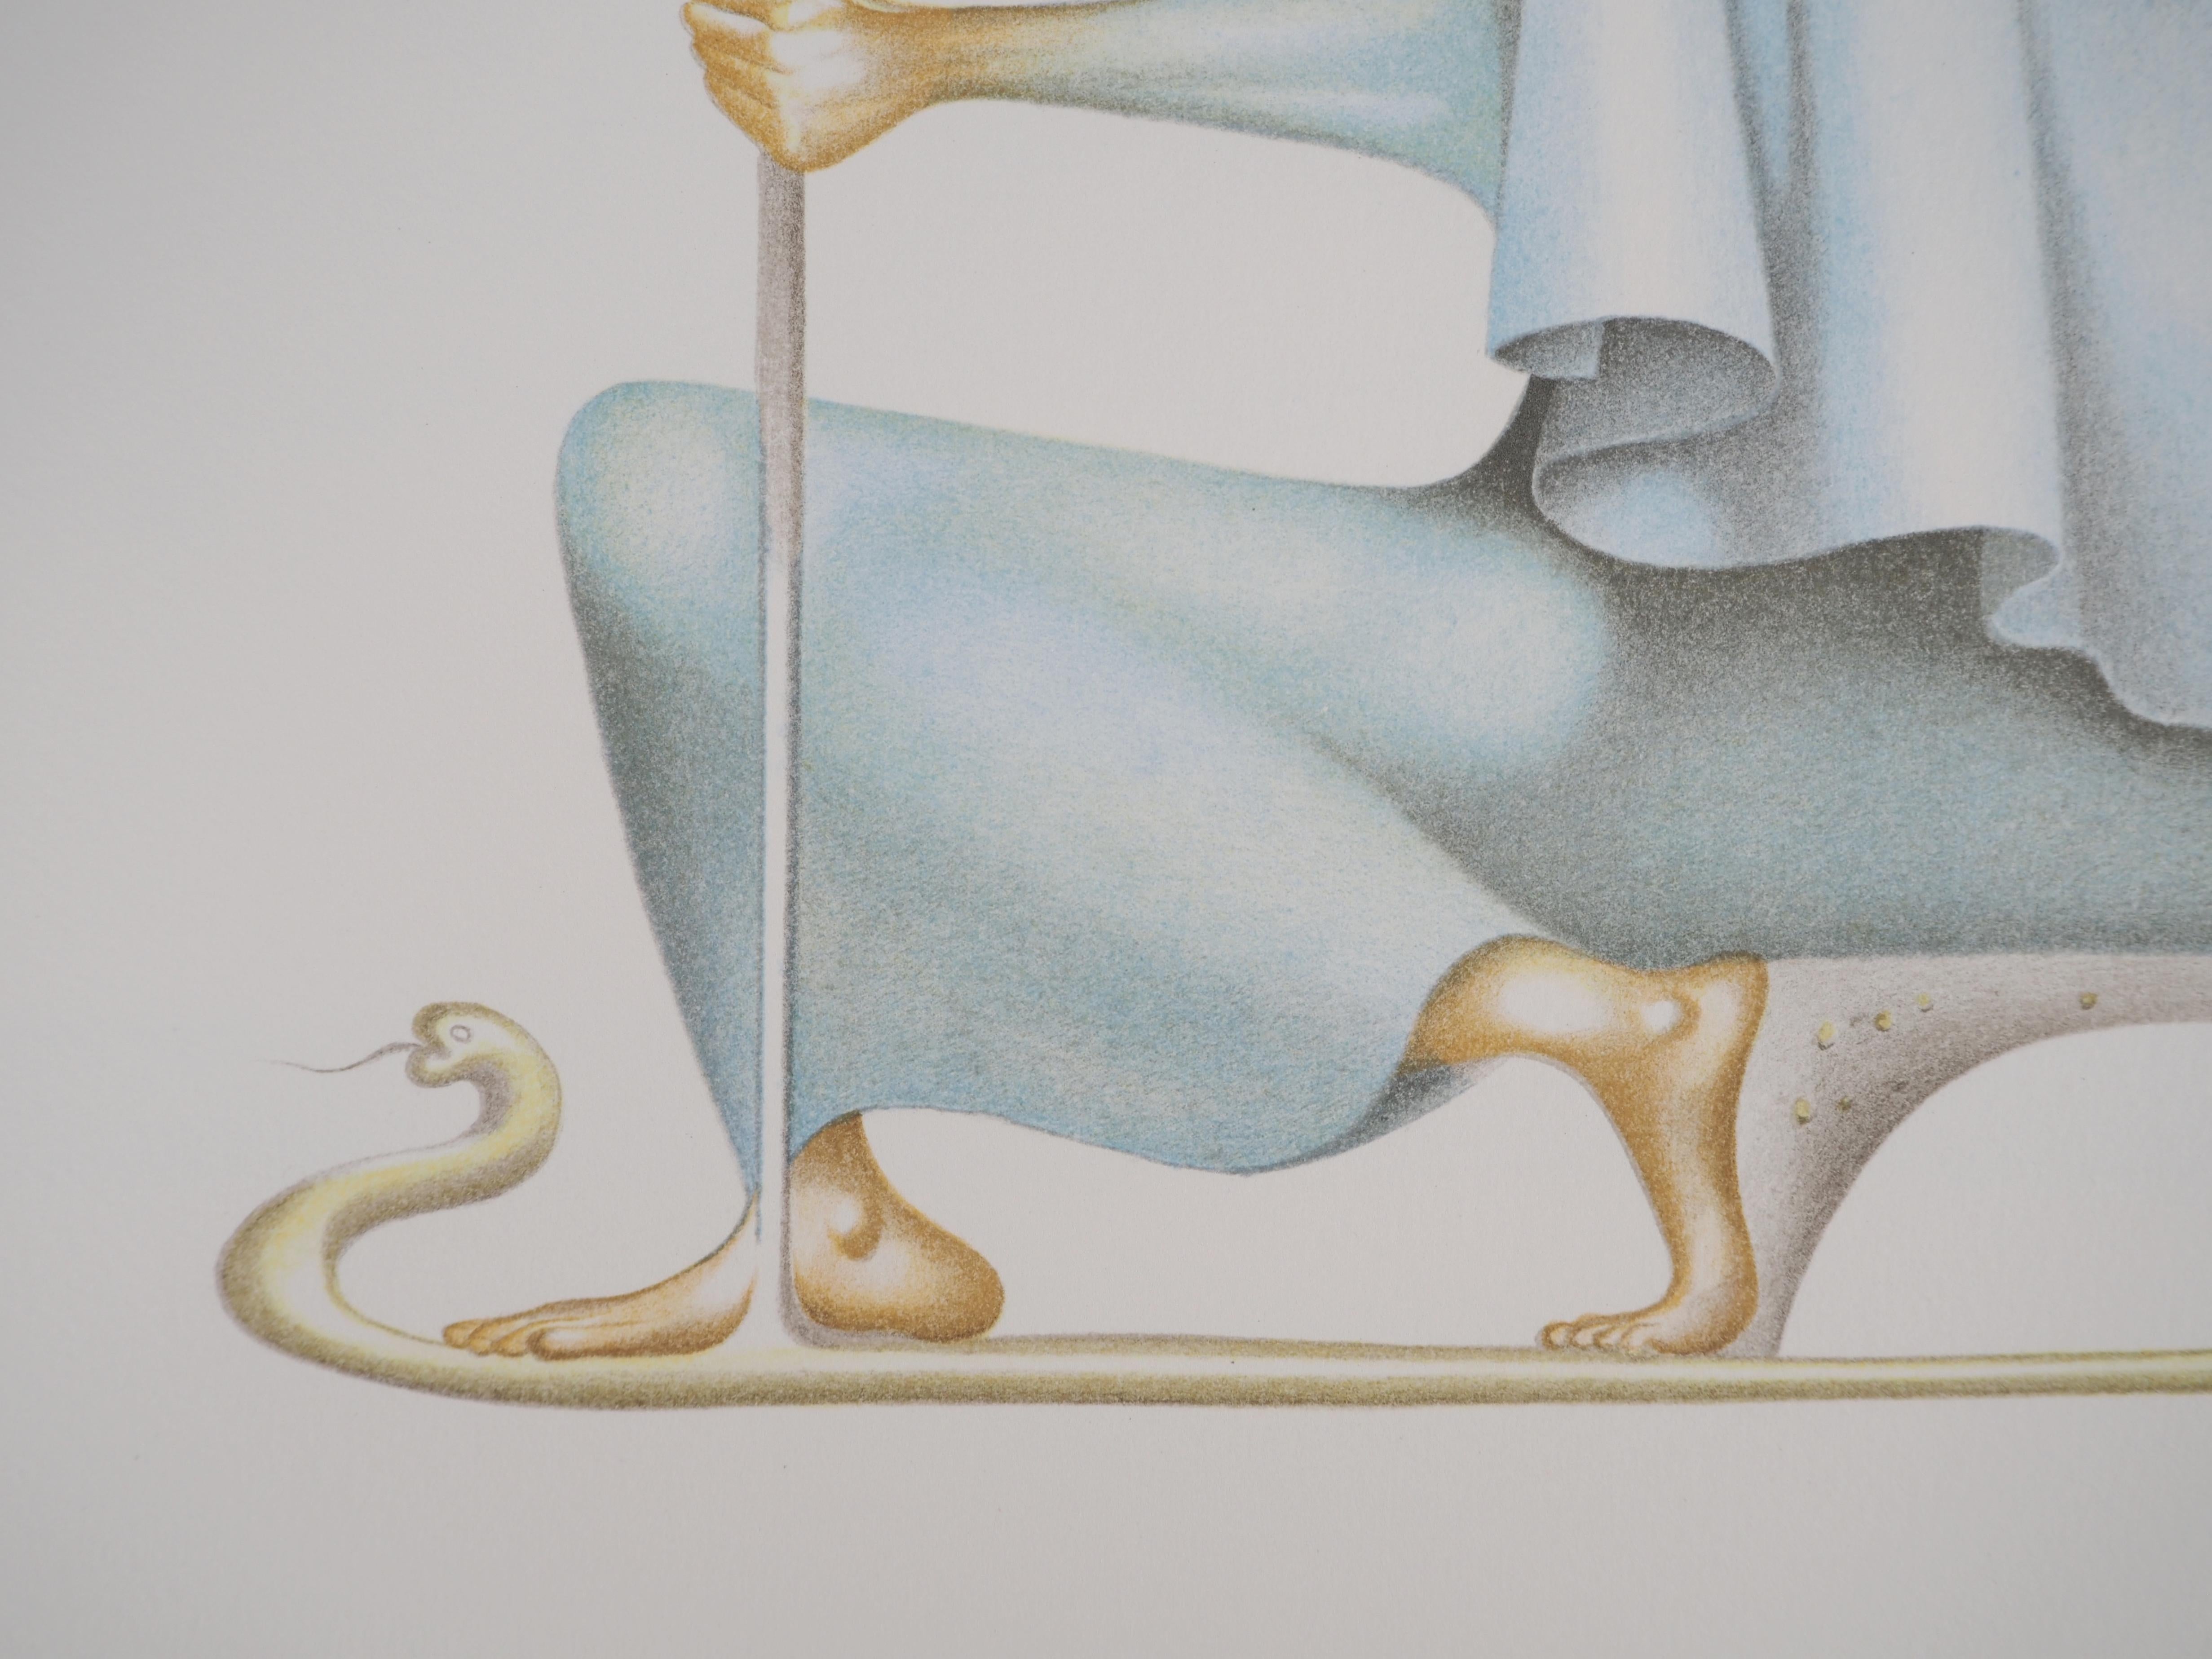 Jules Perahim (1914-2008)
La lumière de la sagesse, 1974

Lithographie originale
Signé au crayon par l'artiste.
Numéroté / 199
Sur vellum d'Arches 56 x 38 cm (c. 22 x 15 inches)

INFORMATION : Extrait du portfolio 